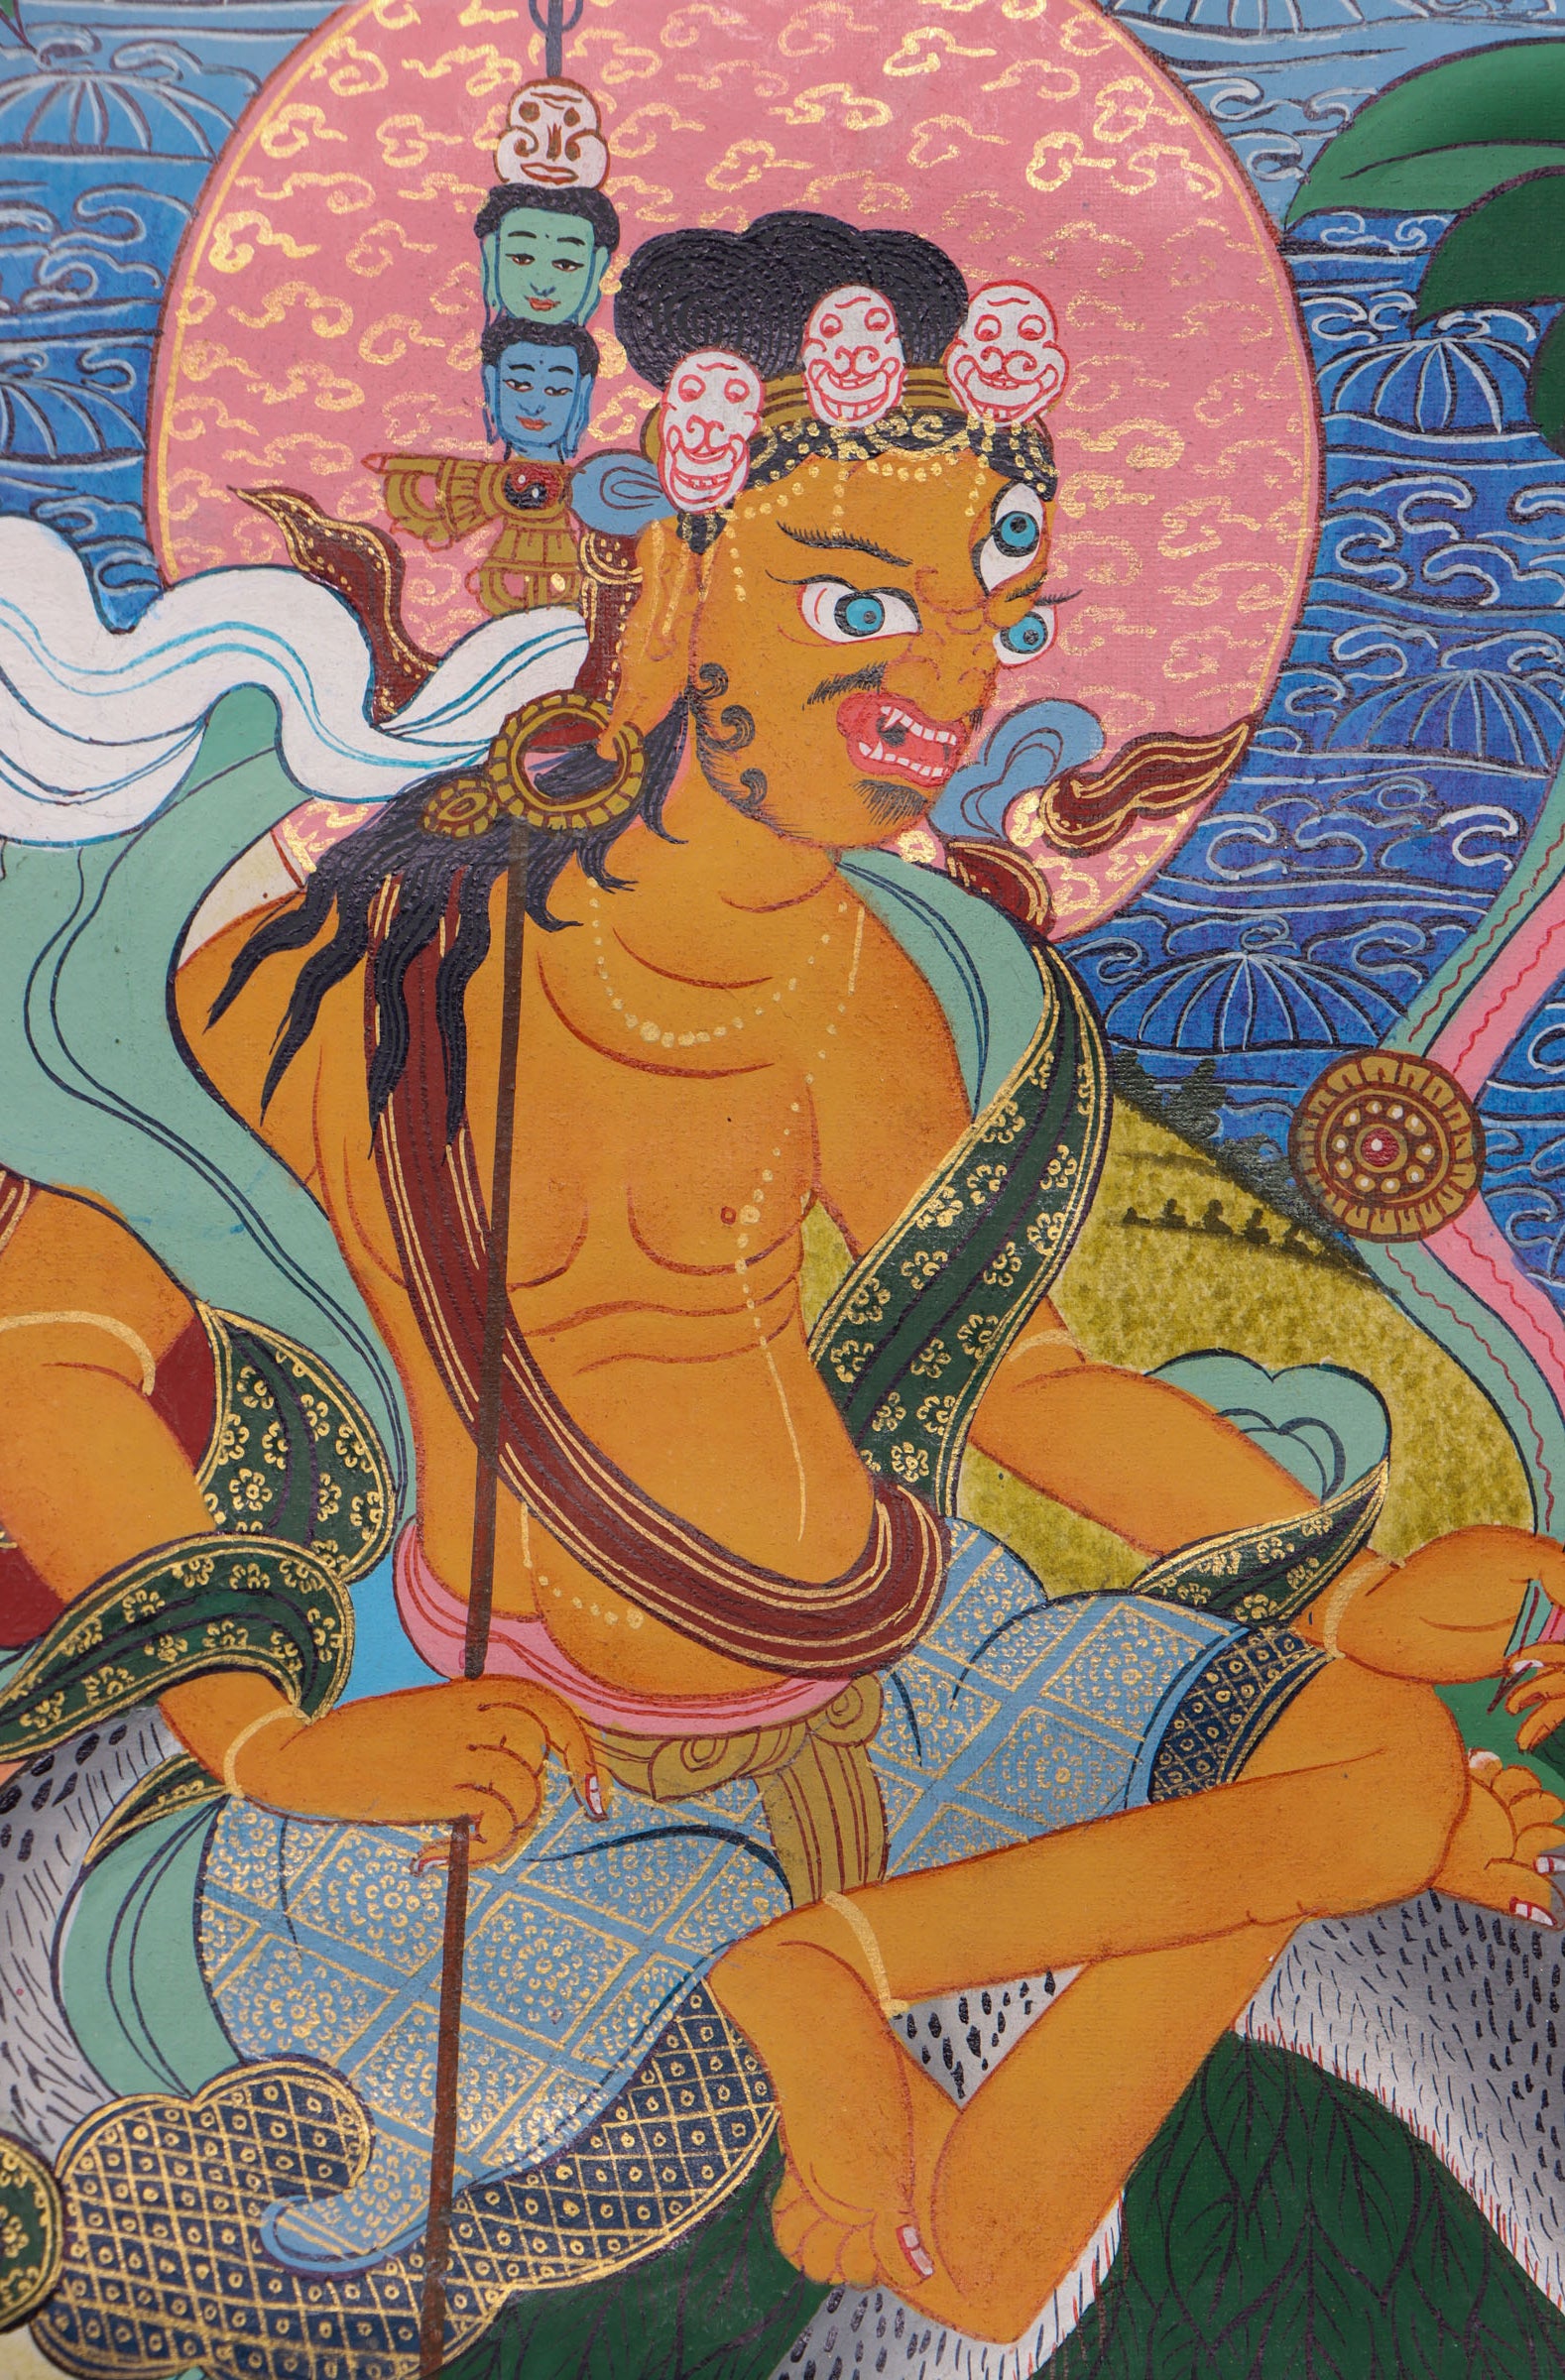 Guru Padmasambhava Thangka painting for meditation practice and spiritual journey.